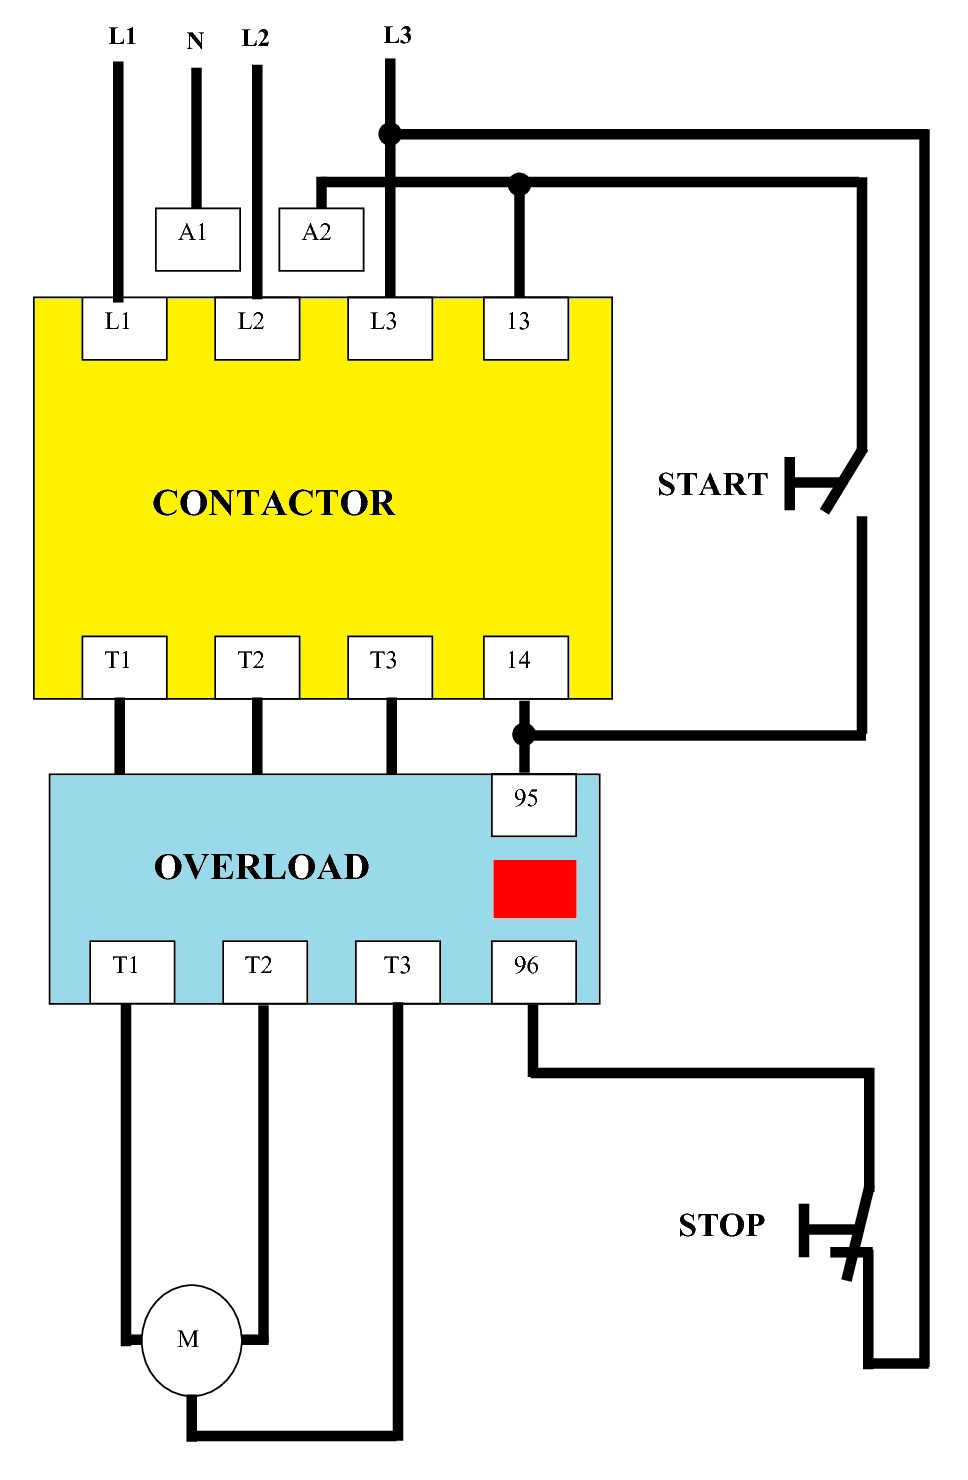 3 Phase Motor Start Stop Wiring Diagram | Wiring Diagram - 3 Phase Motor Starter Wiring Diagram Pdf